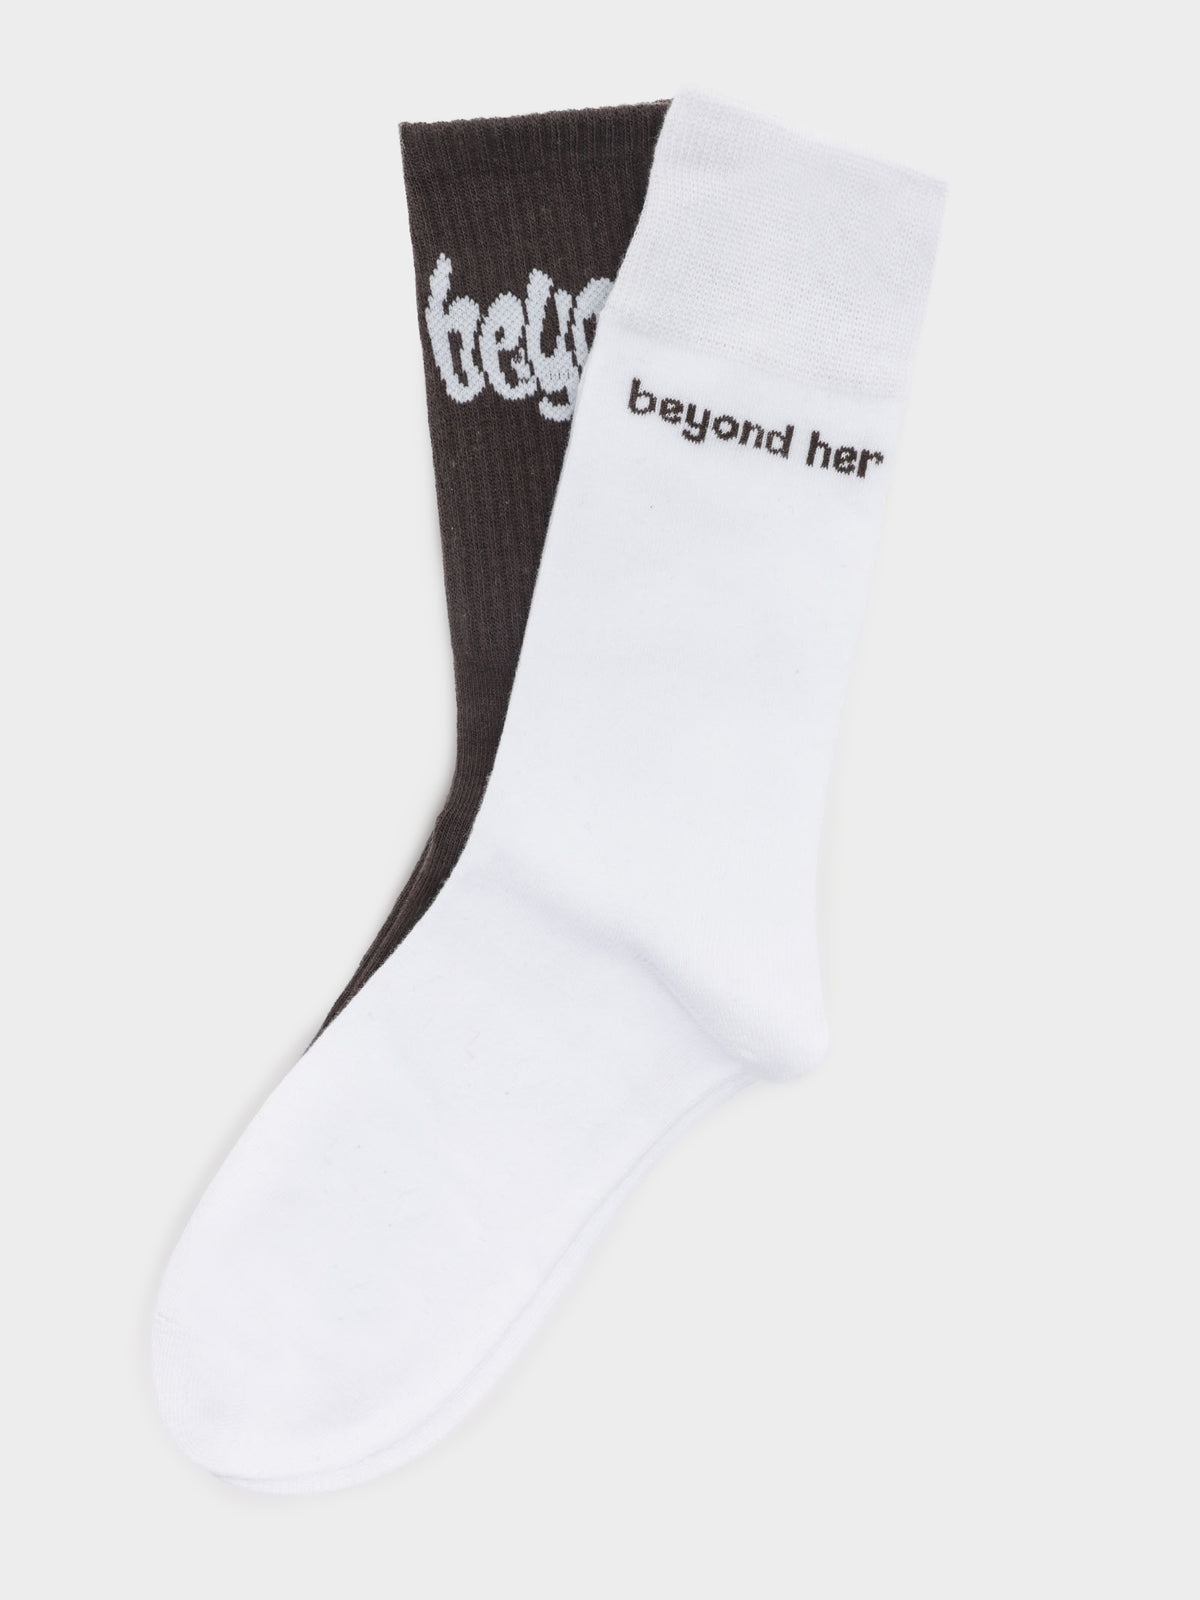 Two Pairs of Beyond Branded Socks in Multi